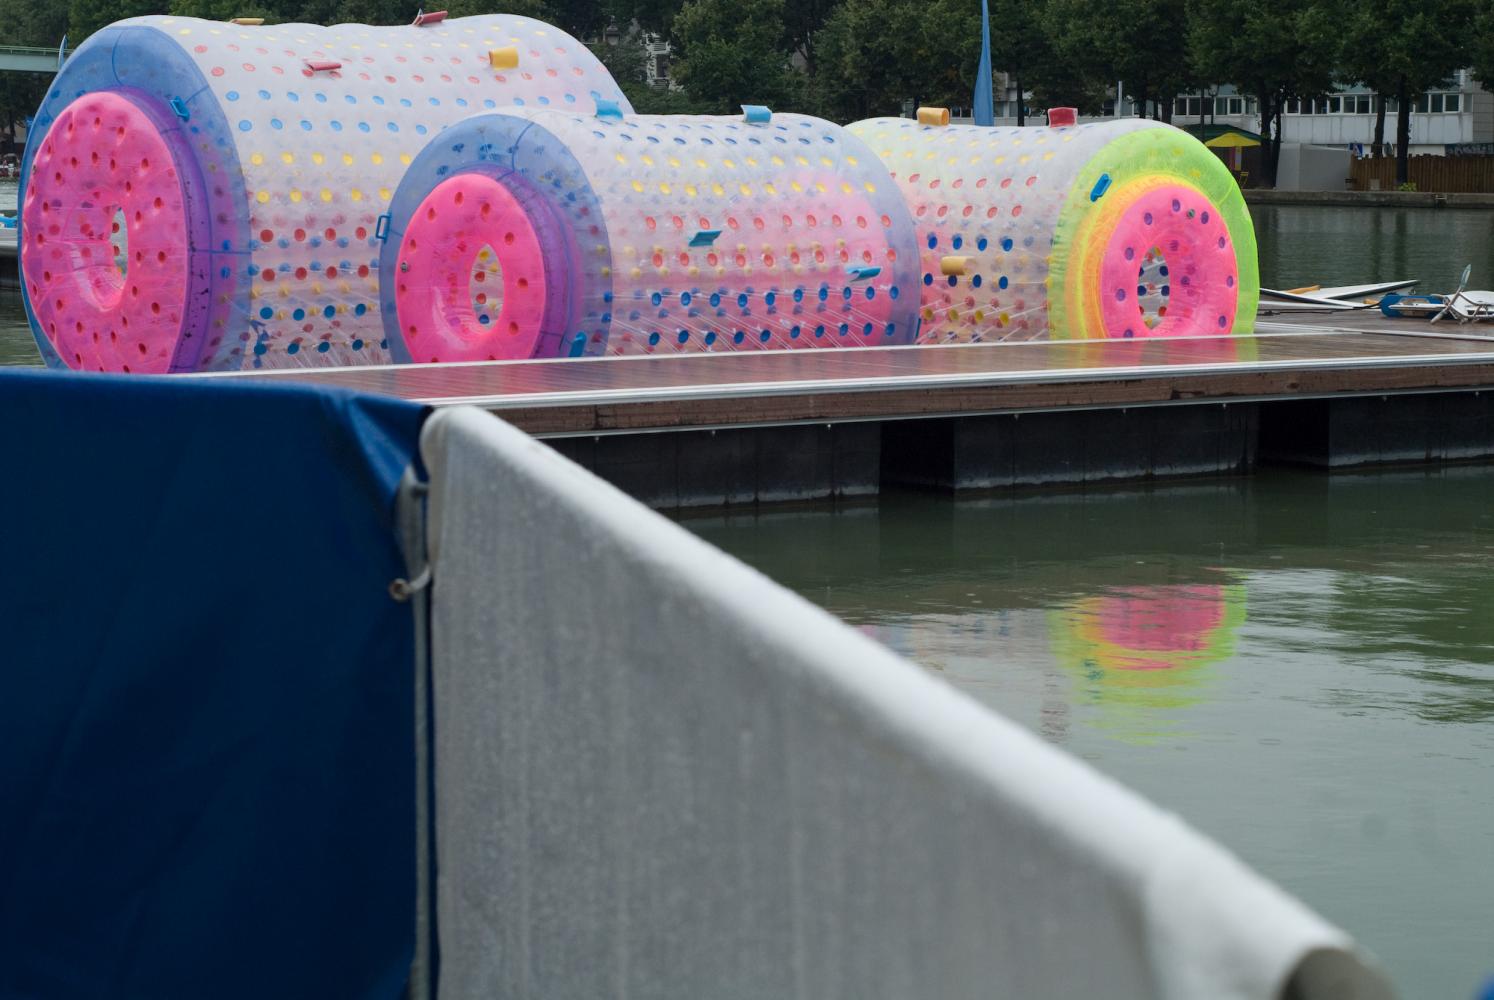 Amarrés à un ponton, derrière deux barrières métalliques recouvertes d'une bâche bleue et d'une blanche, trois roues gonflables aux couleurs vives. Paris, août 2010.